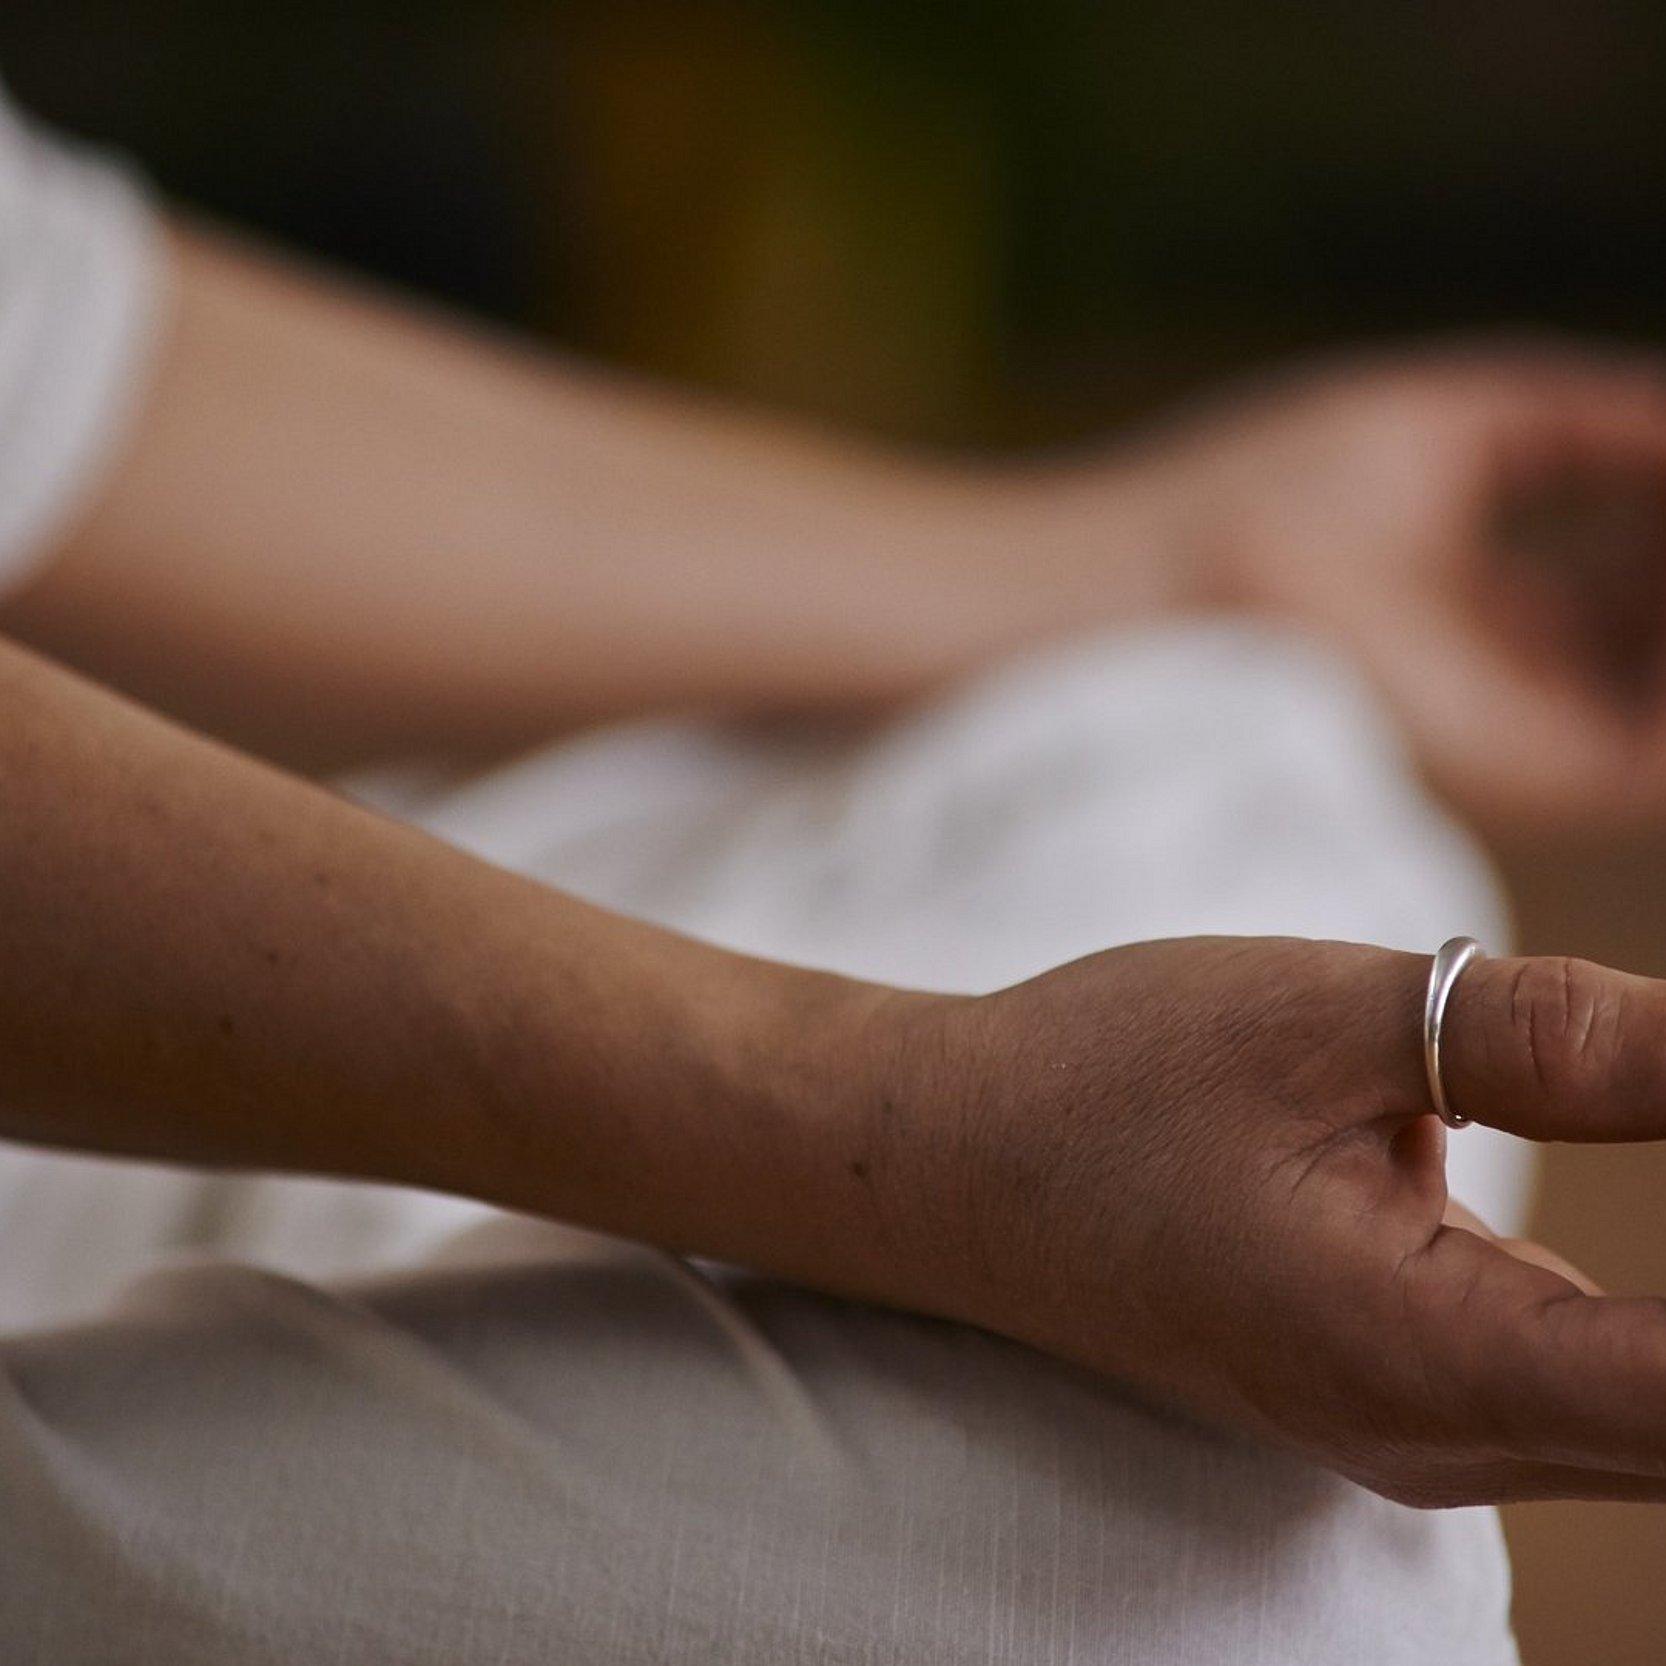 Bei einer Yoga-Übung liegen die Hände einer Person, die weiße Kleider trägt, auf ihren Knien.